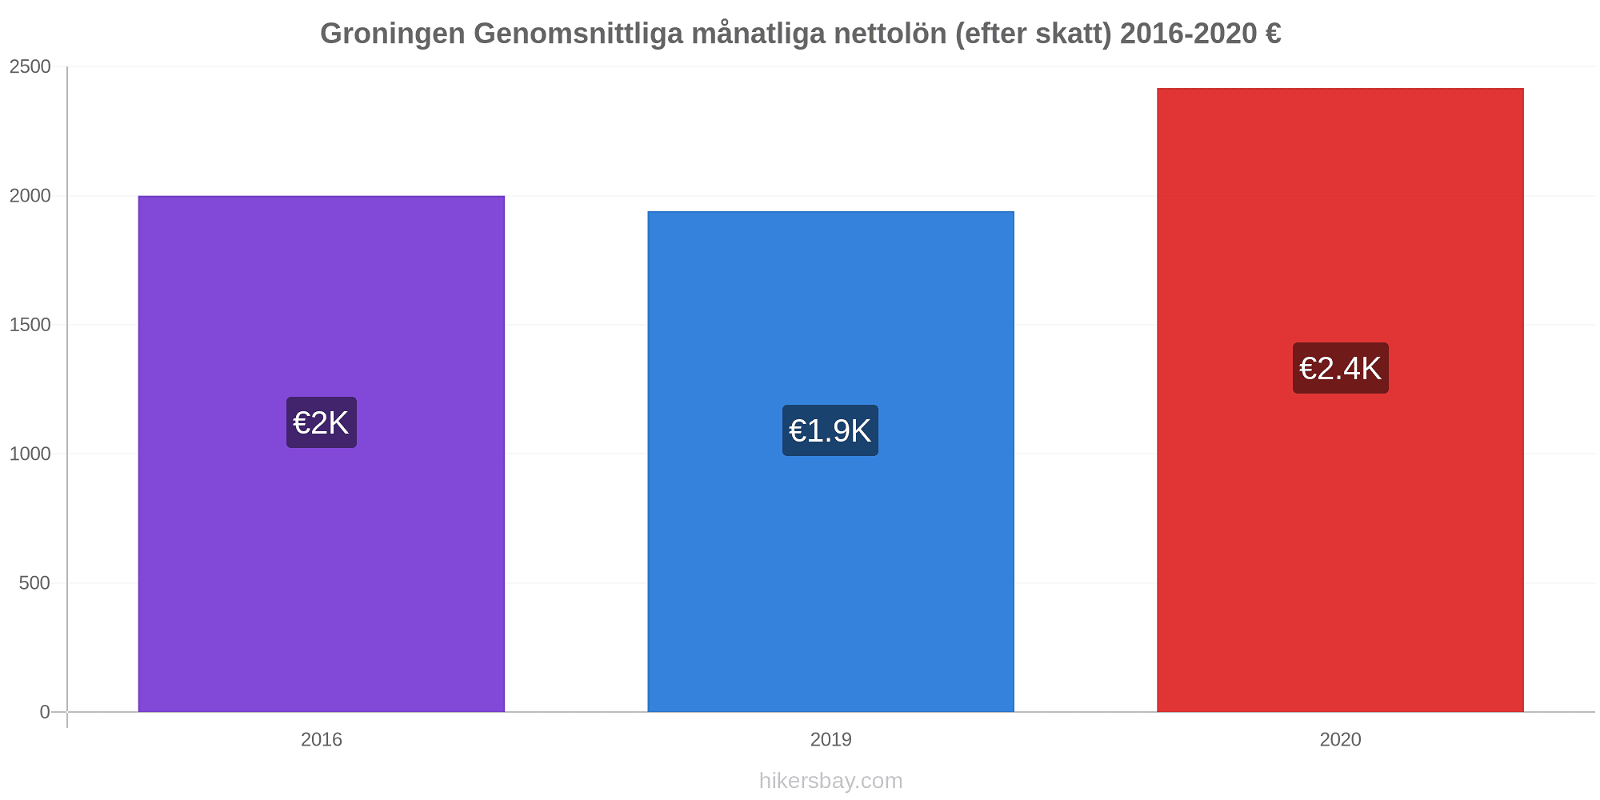 Groningen prisförändringar Genomsnittliga månatliga nettolön (efter skatt) hikersbay.com